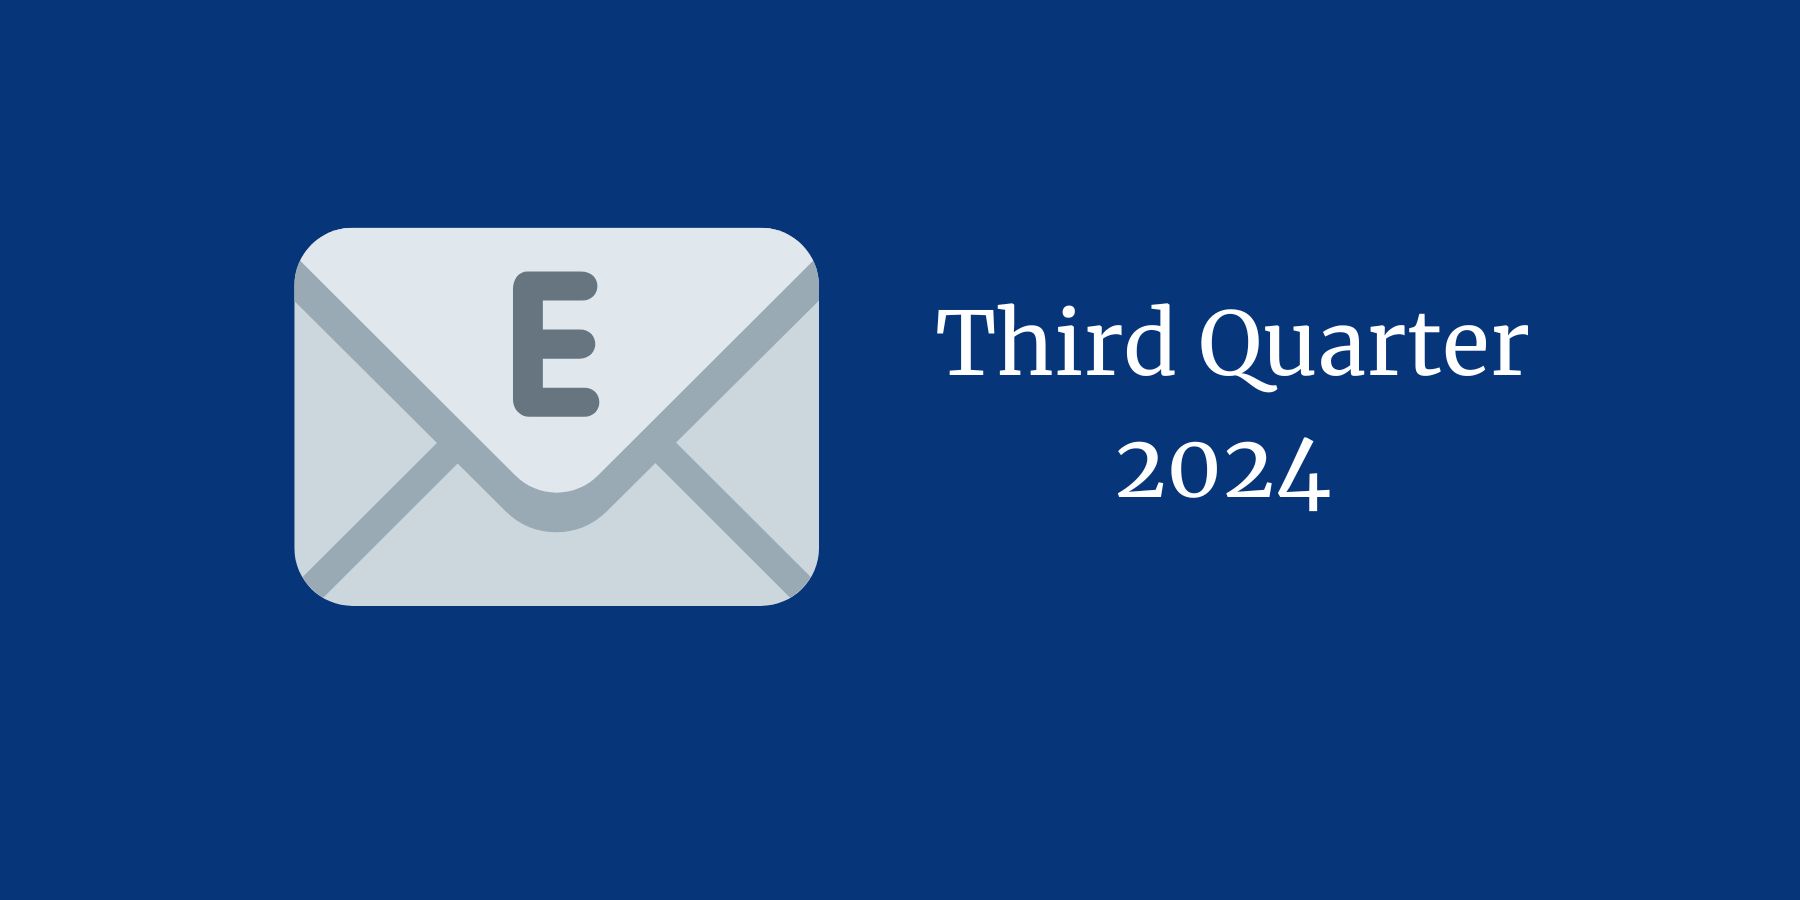 Third Quarter 2024